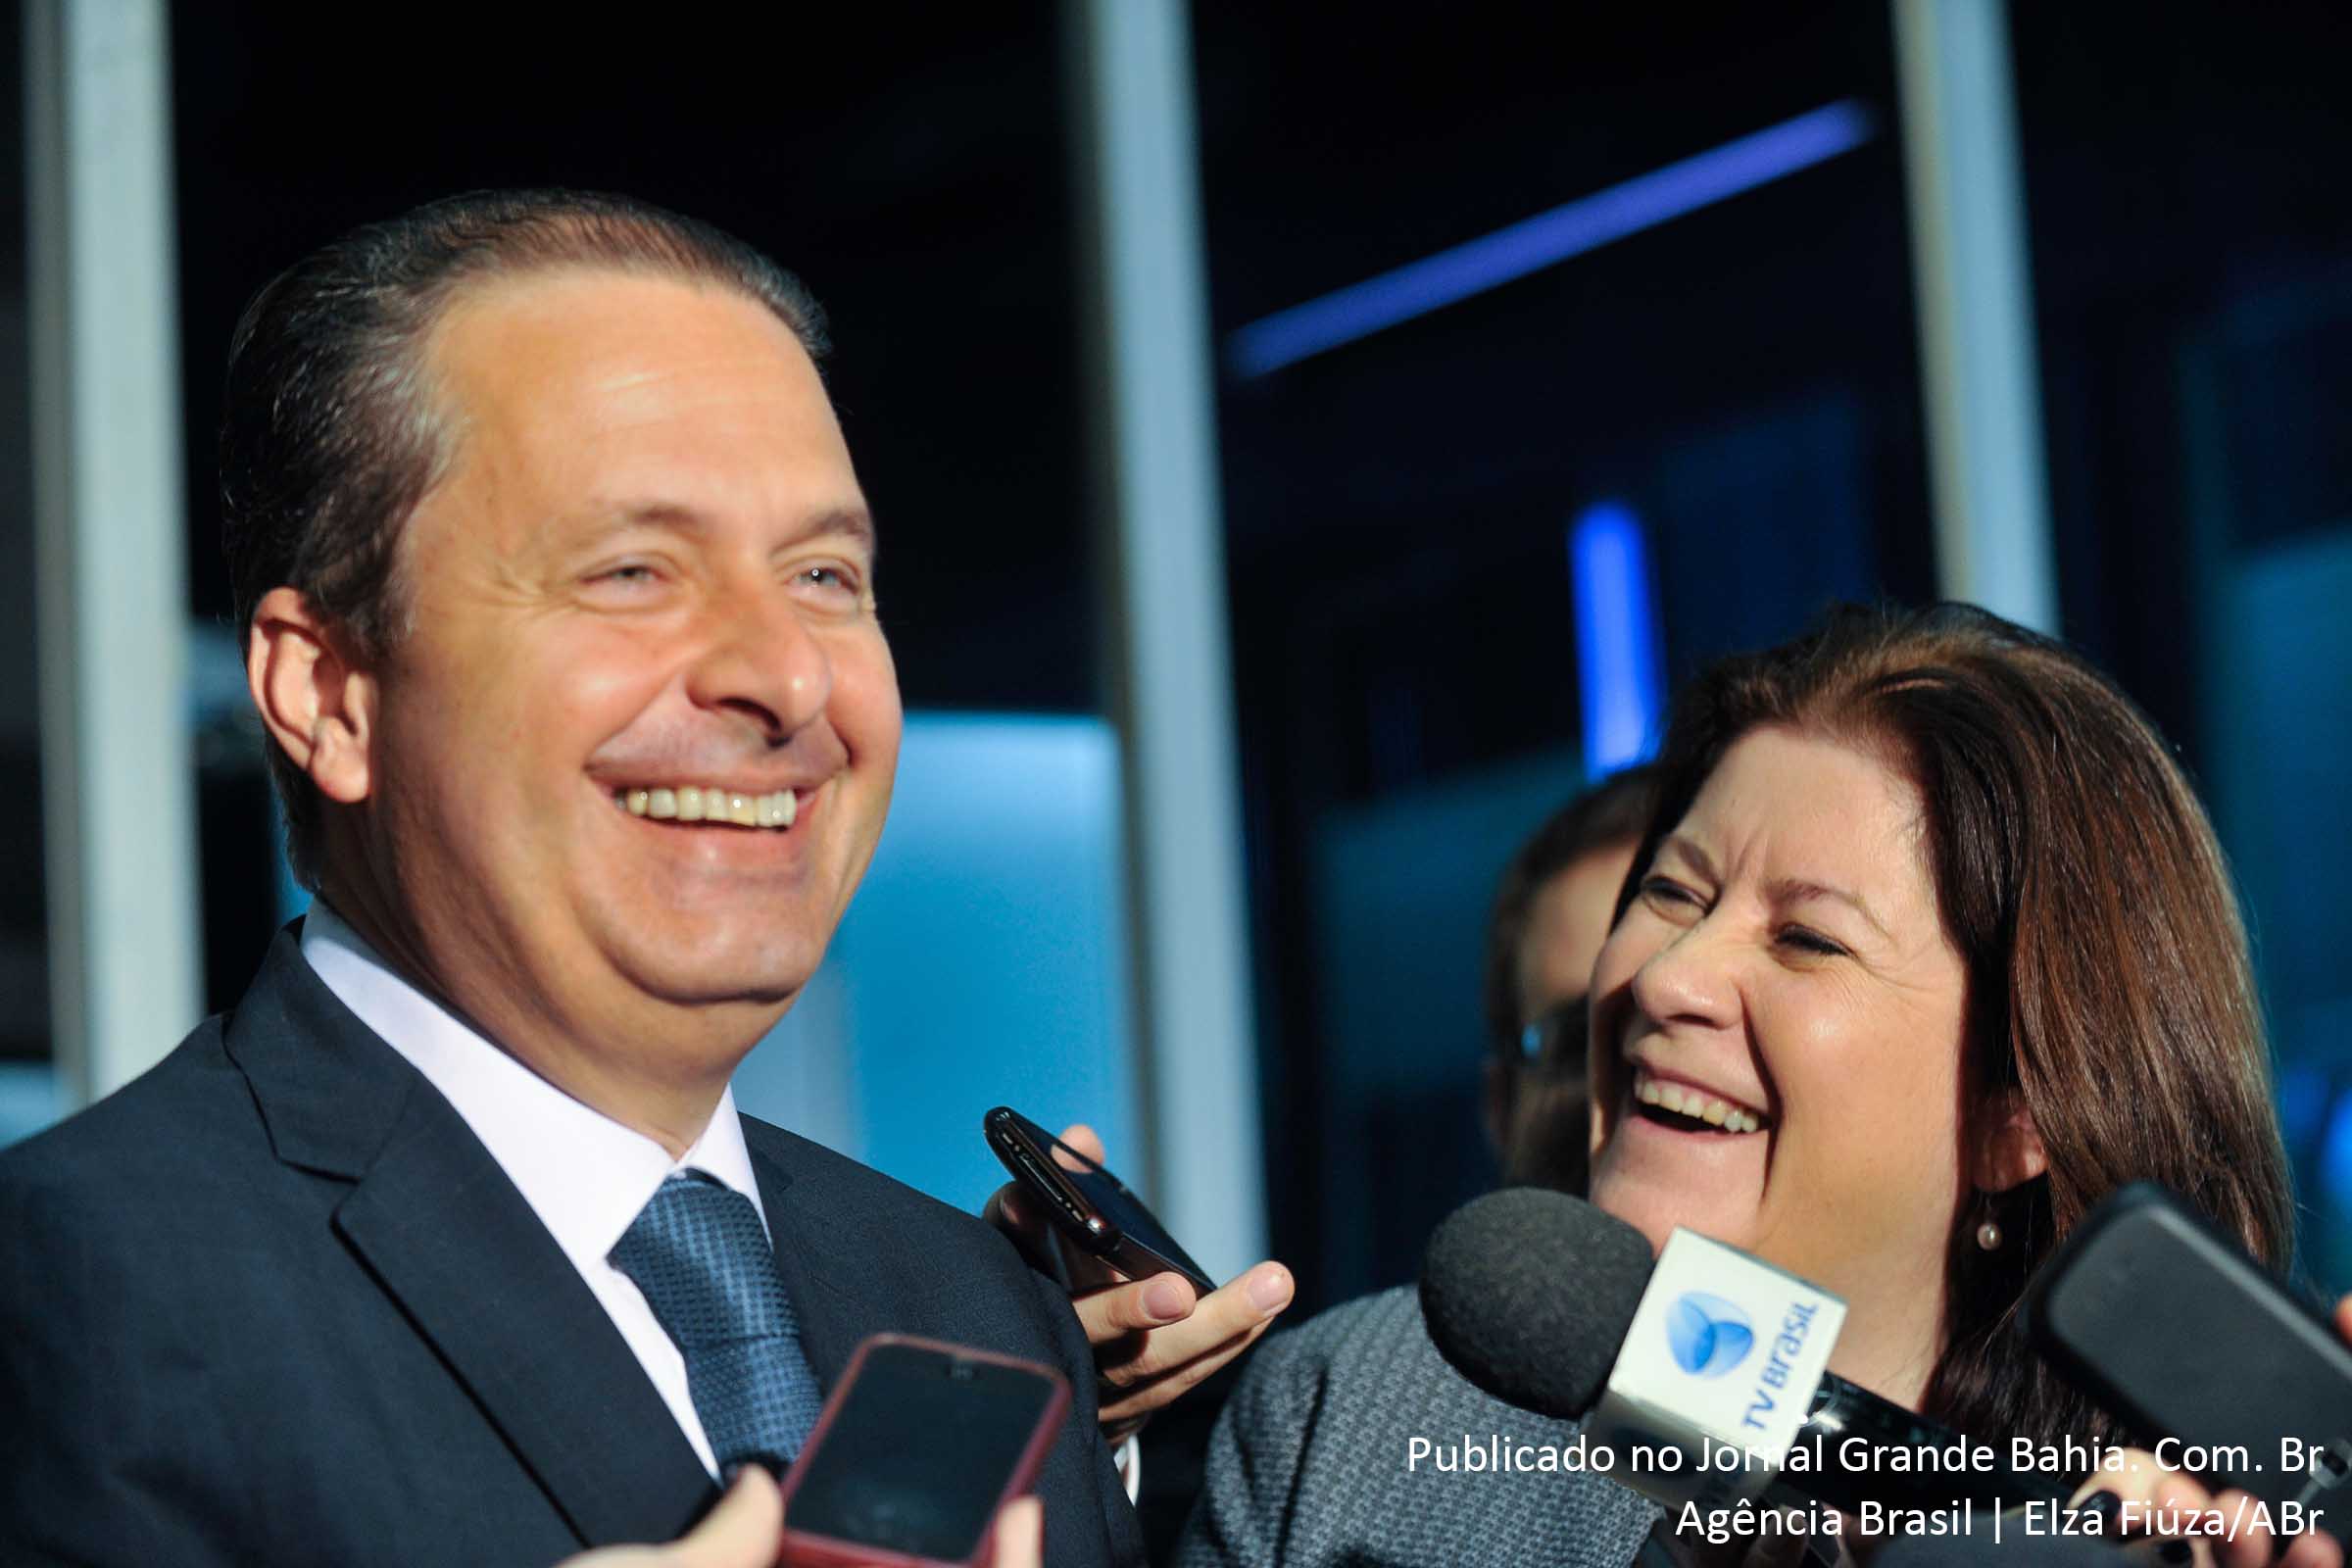 Eduardo Campos: “Esta decisão não diz respeito a qualquer antecipação quanto a posicionamentos que haveremos de adotar no pleito eleitoral que se avizinha, visto que nossa estratégia – que não exclui a possibilidade de candidatura própria – será discutida nas instâncias próprias”